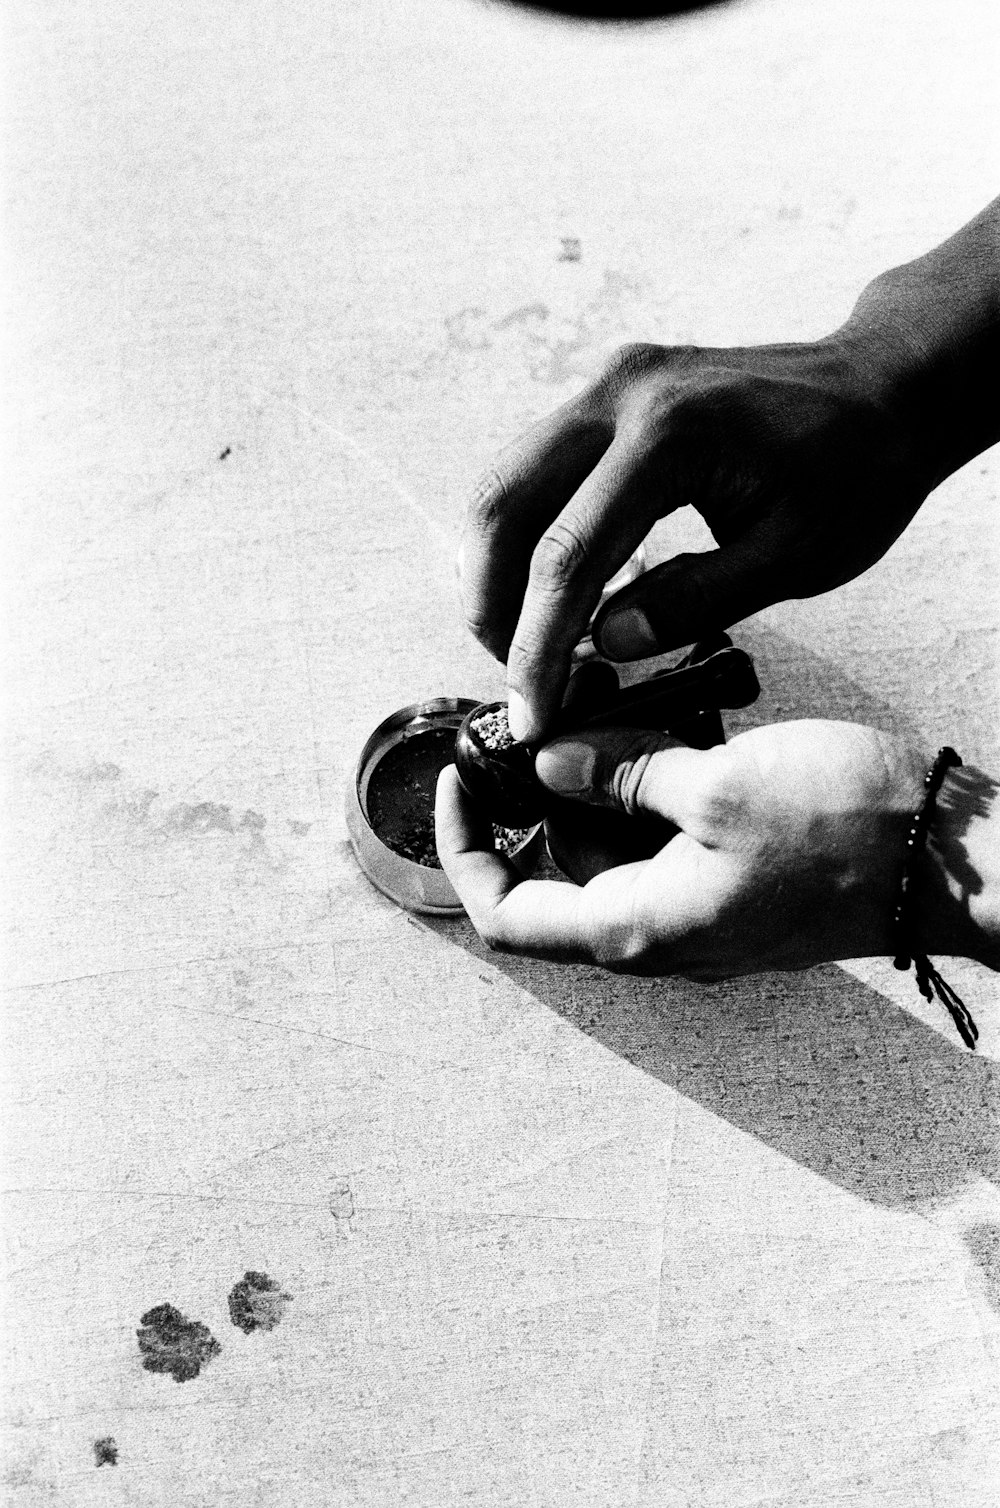 une photo en noir et blanc d’une personne mettant quelque chose dans une chaussure